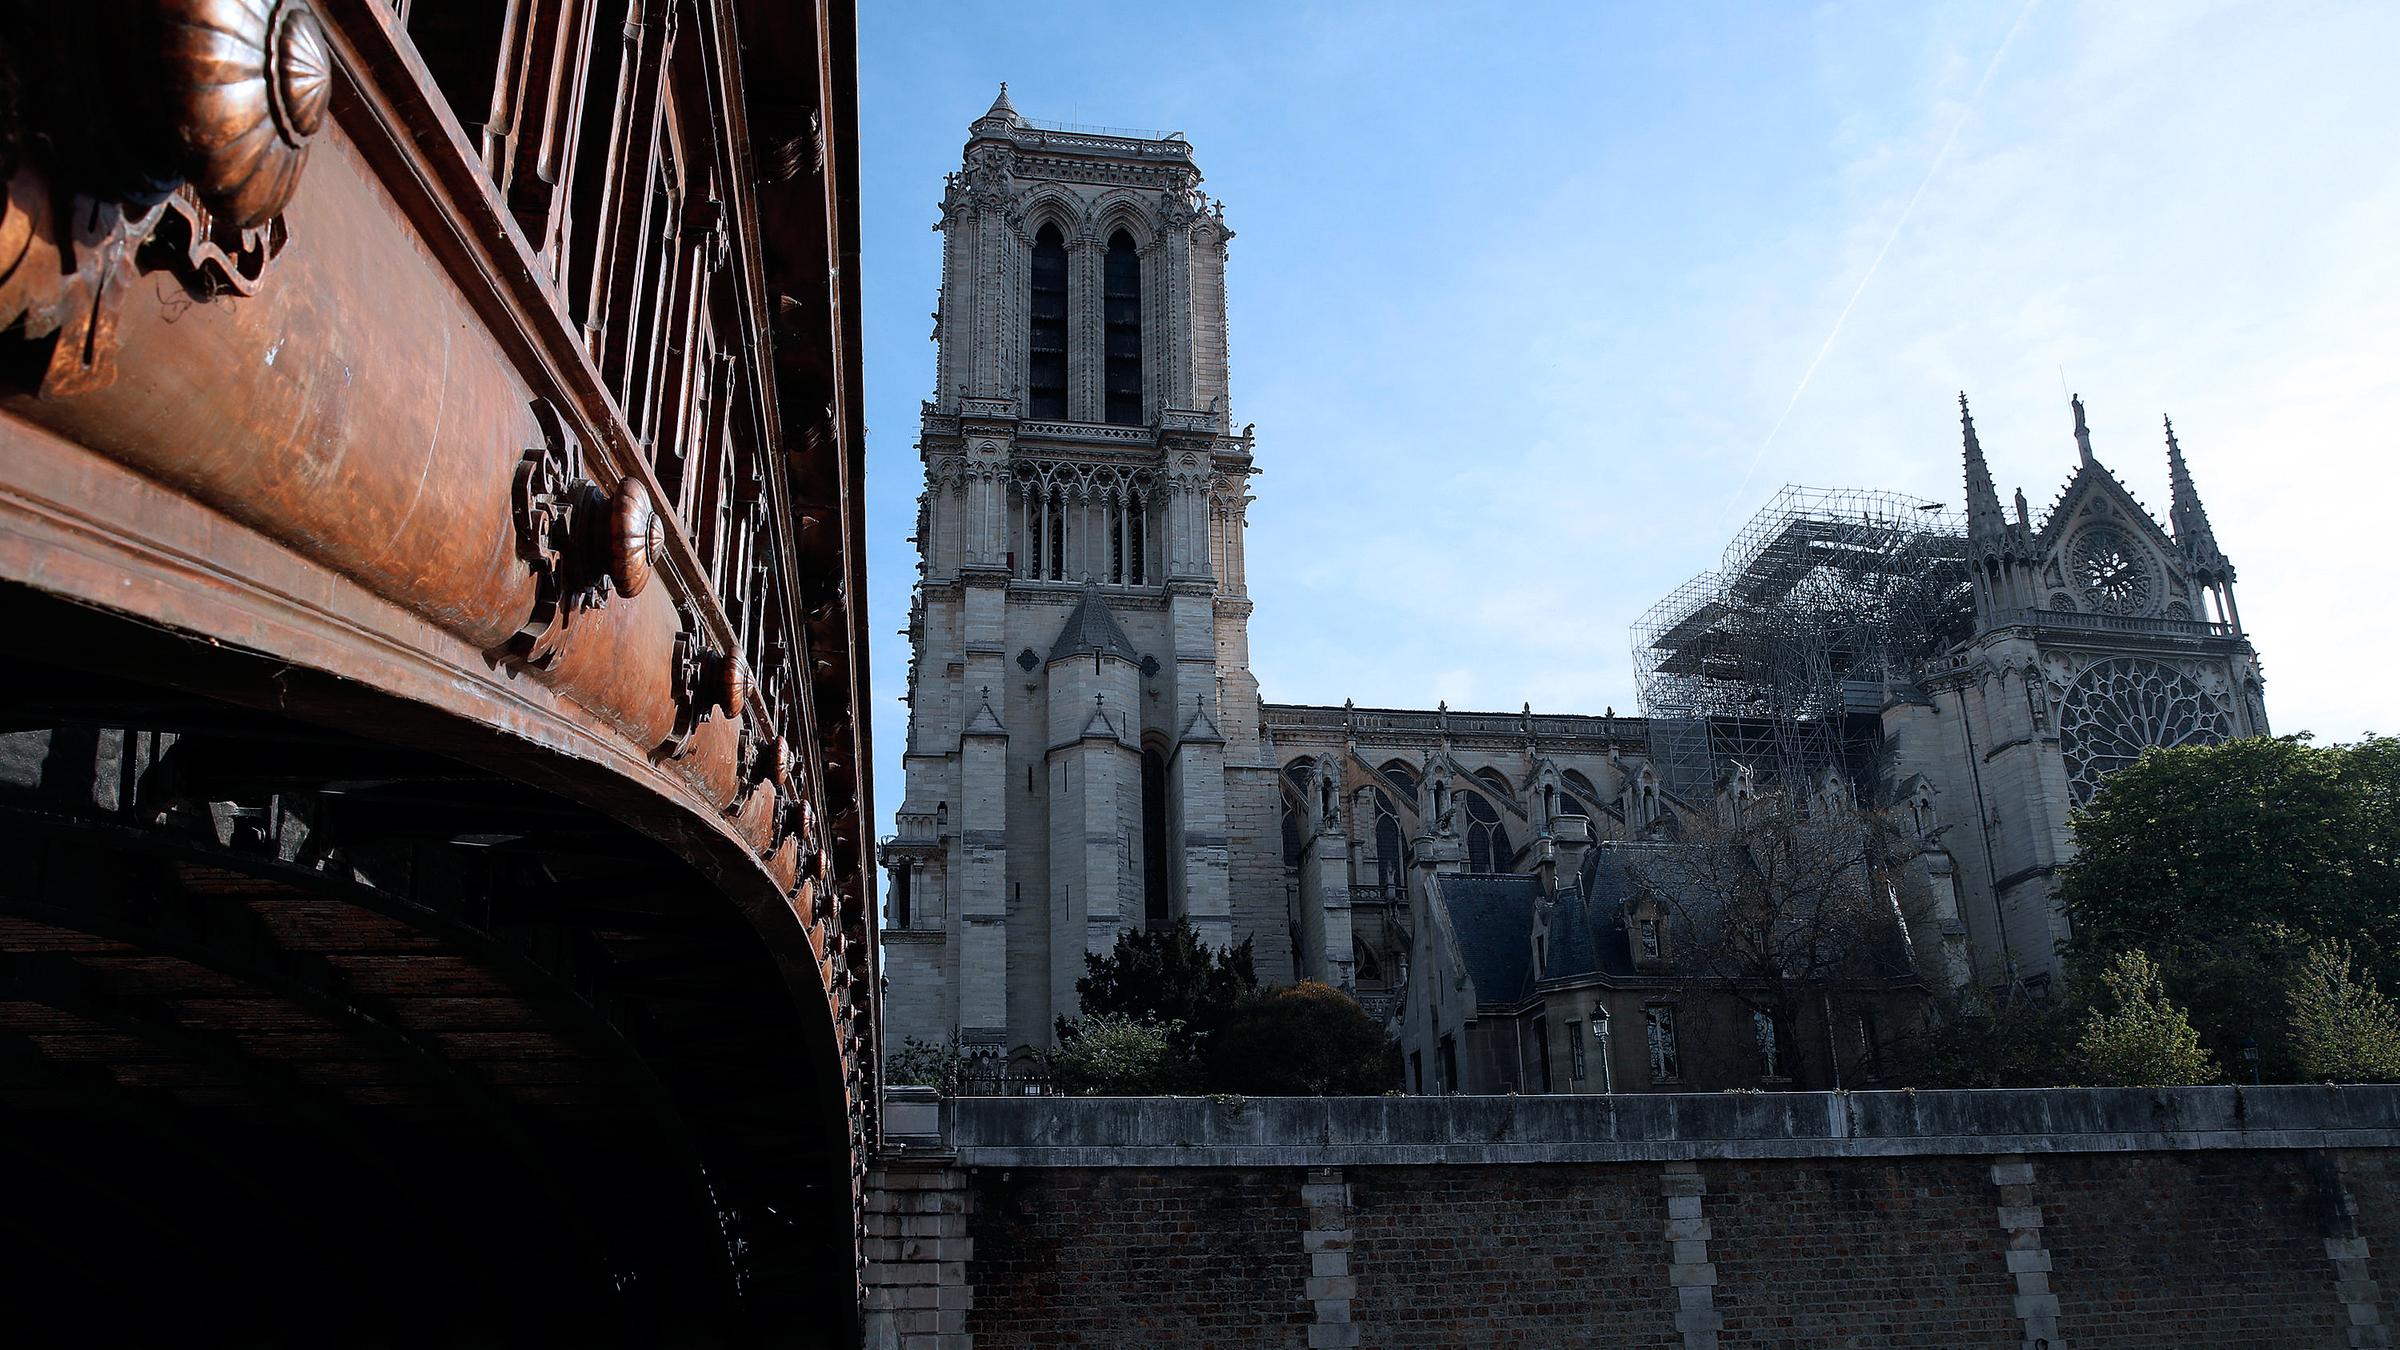 Zerstörungen nach dem Brand in Notre-Dame, Paris, aufgenommen am 18.04.2019